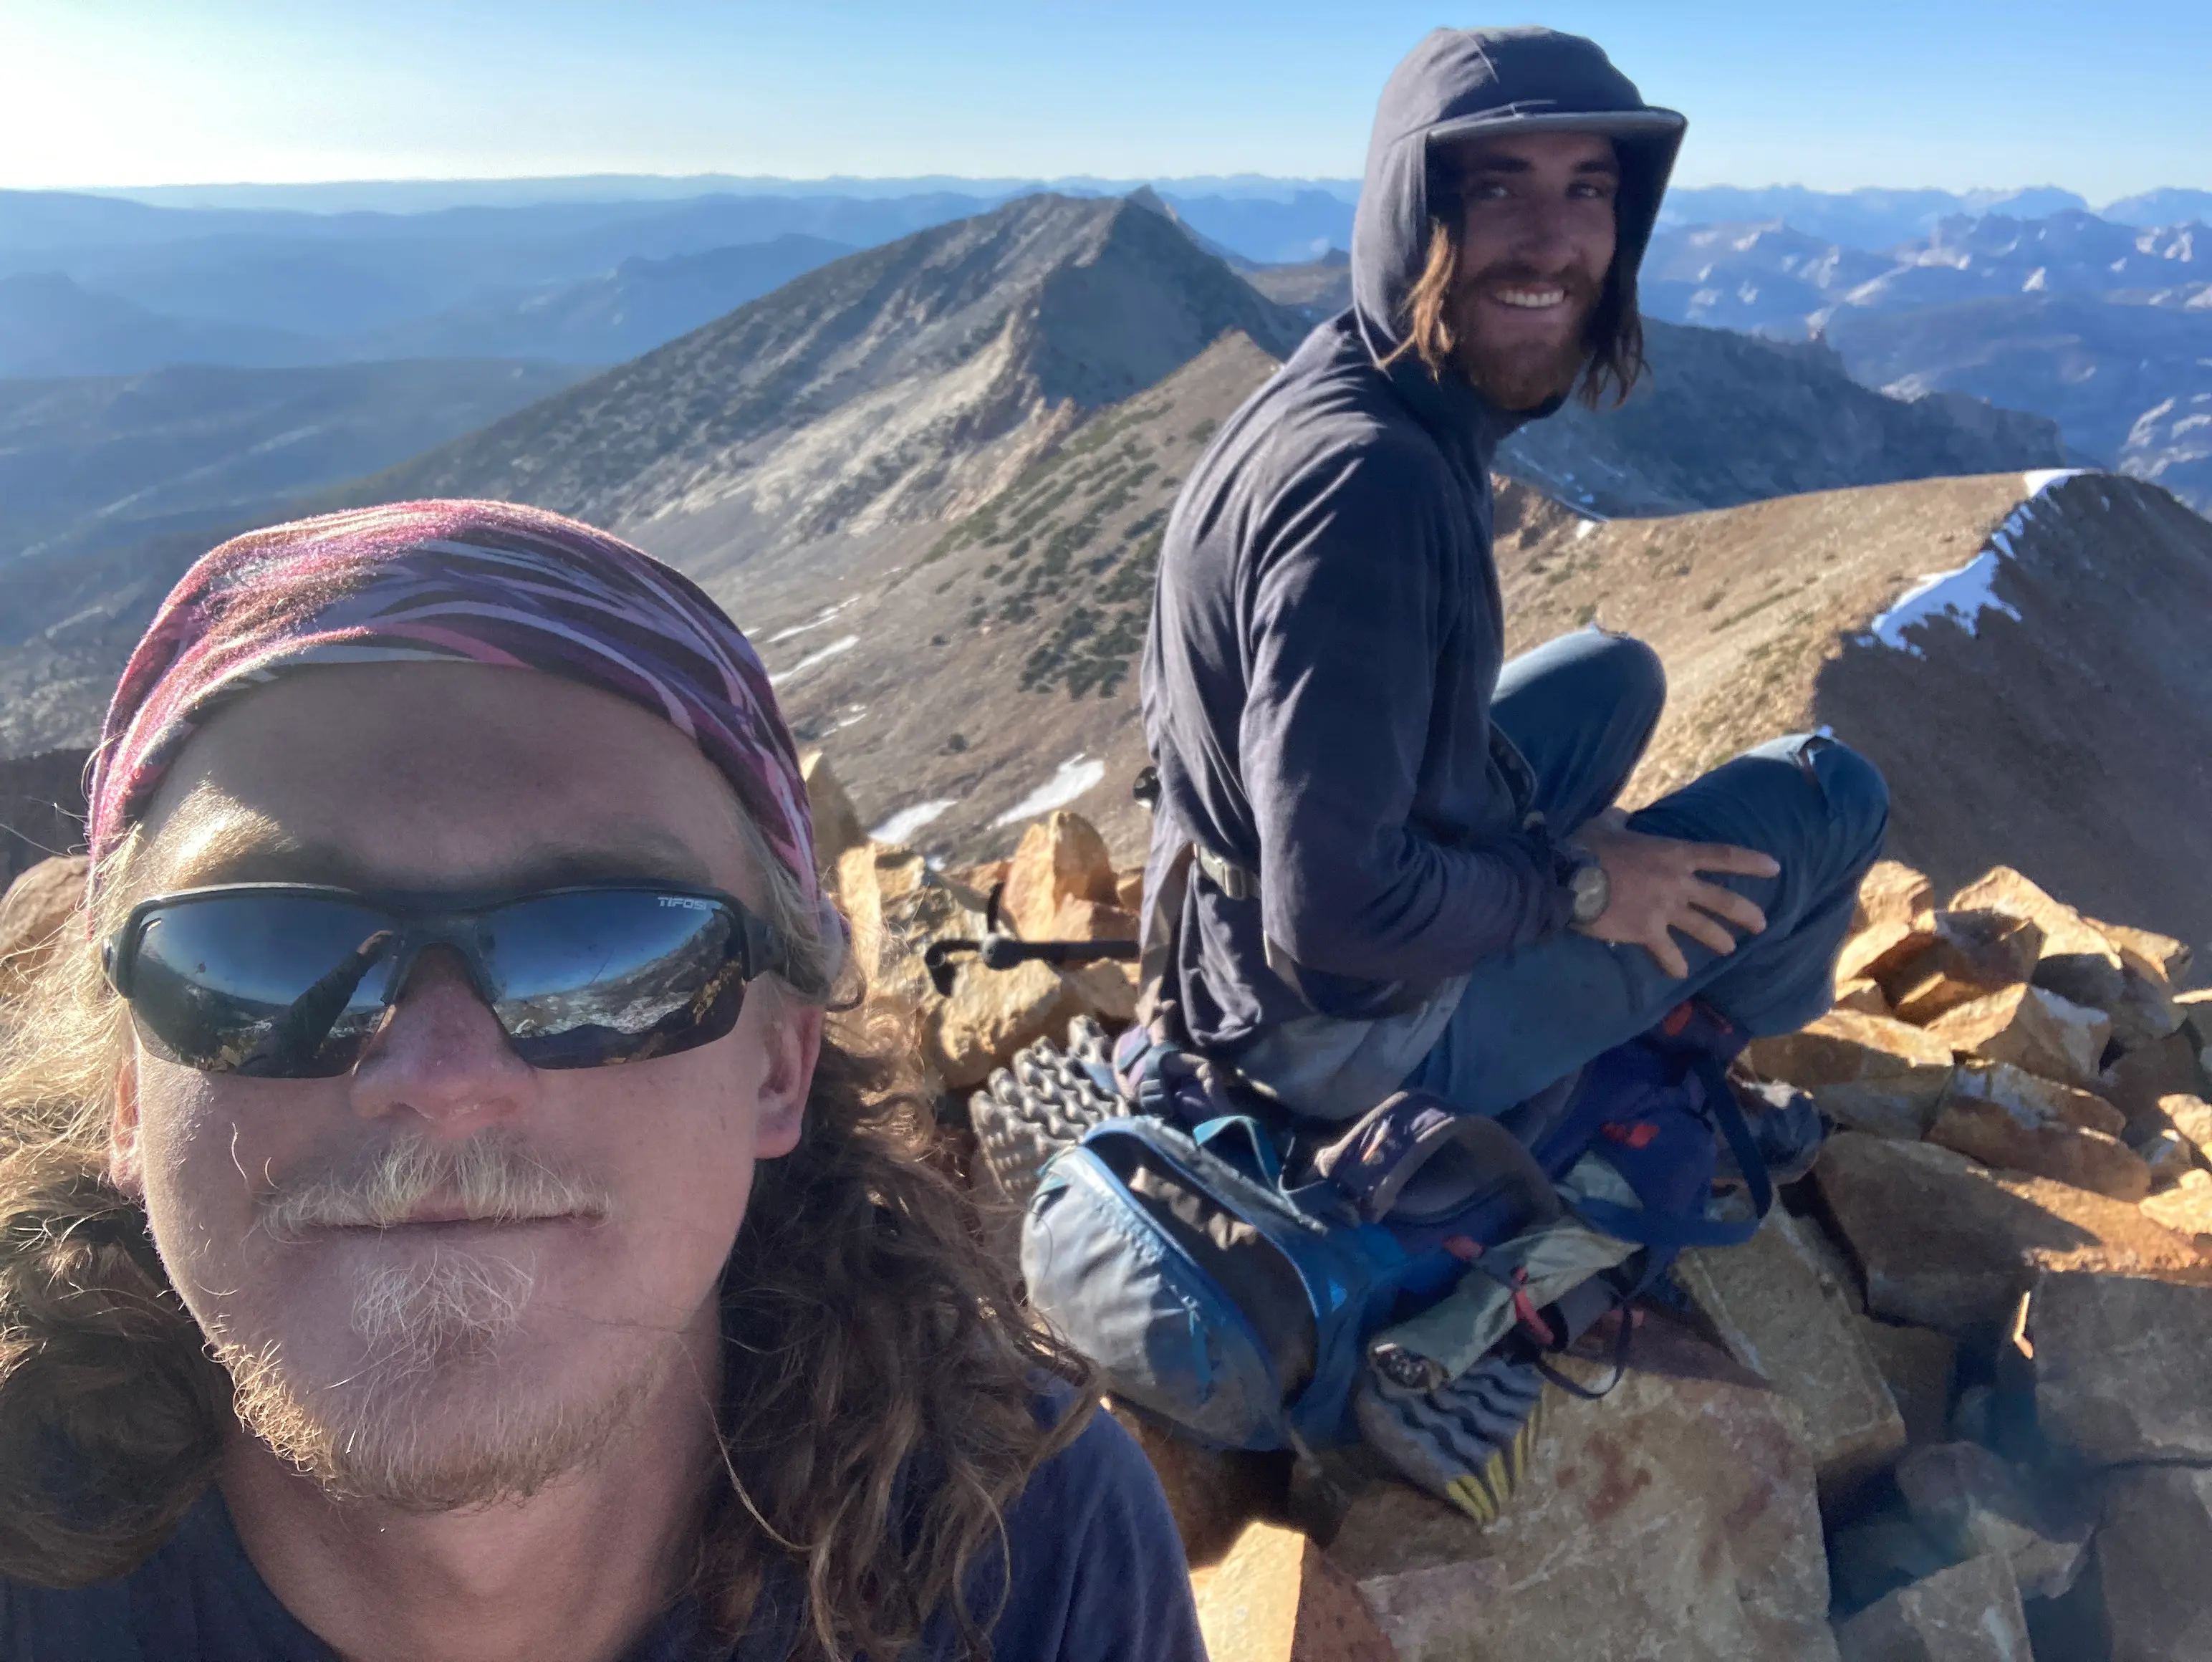 Red Peak summit